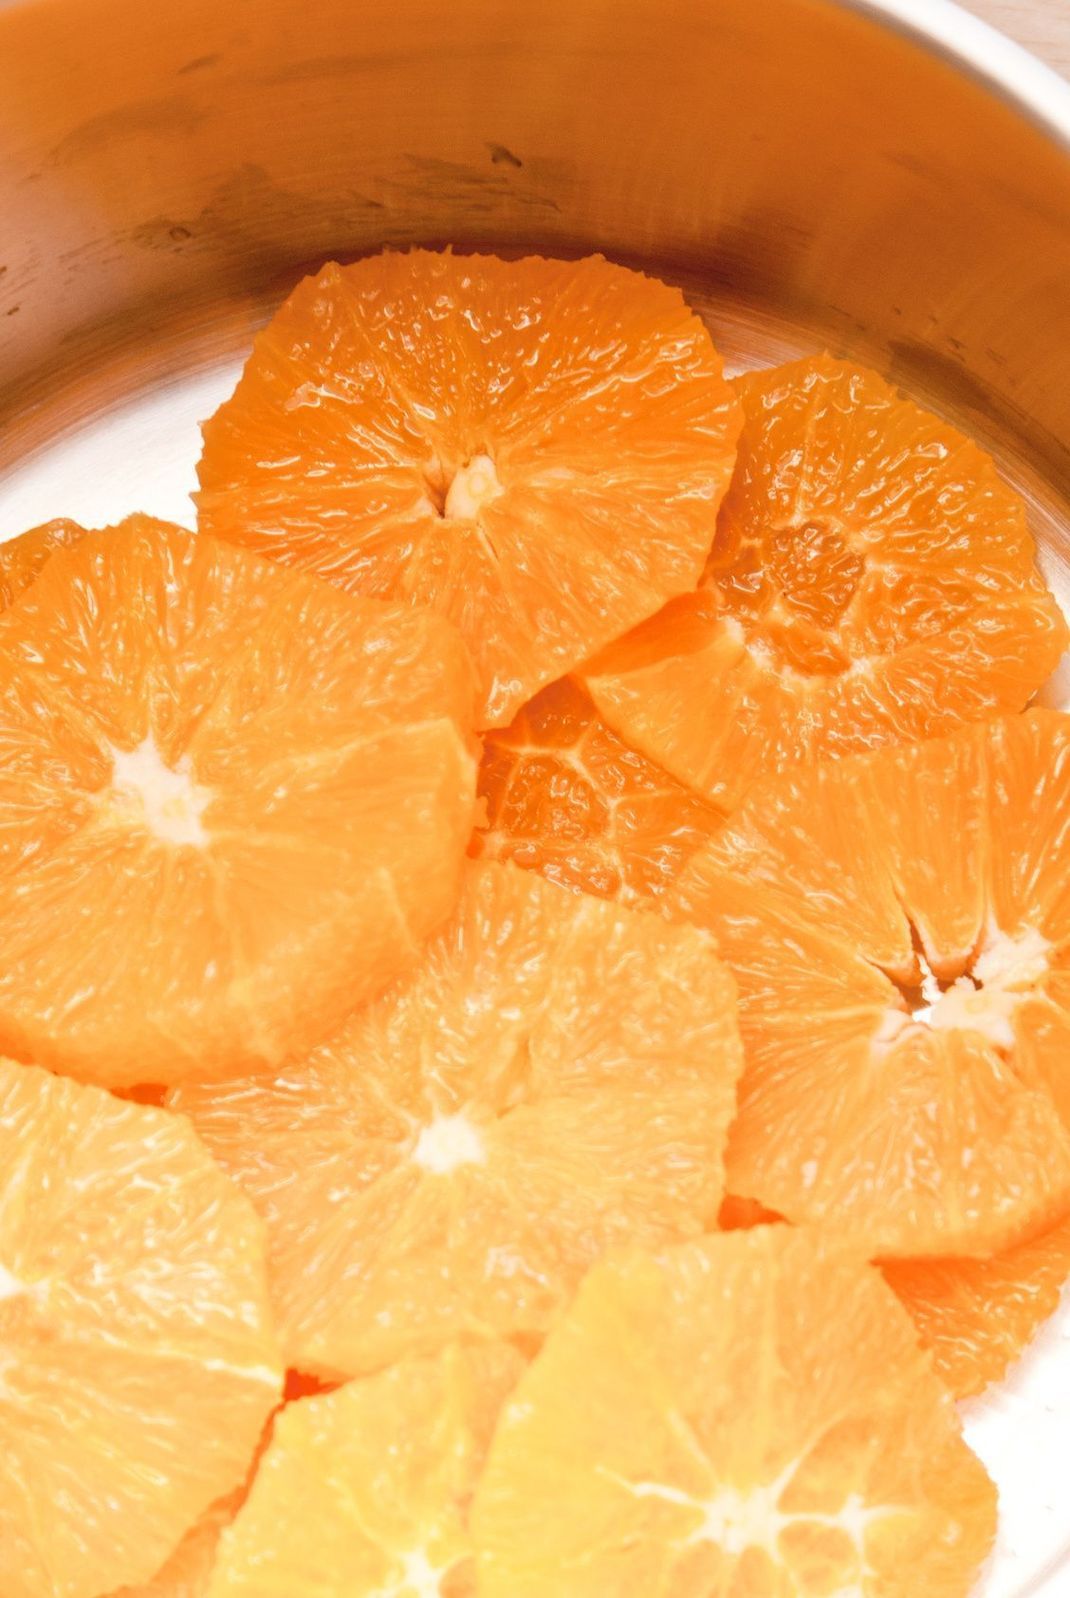 Orangen filetieren und karamellisieren – eine herrlich fruchtige Beilage.